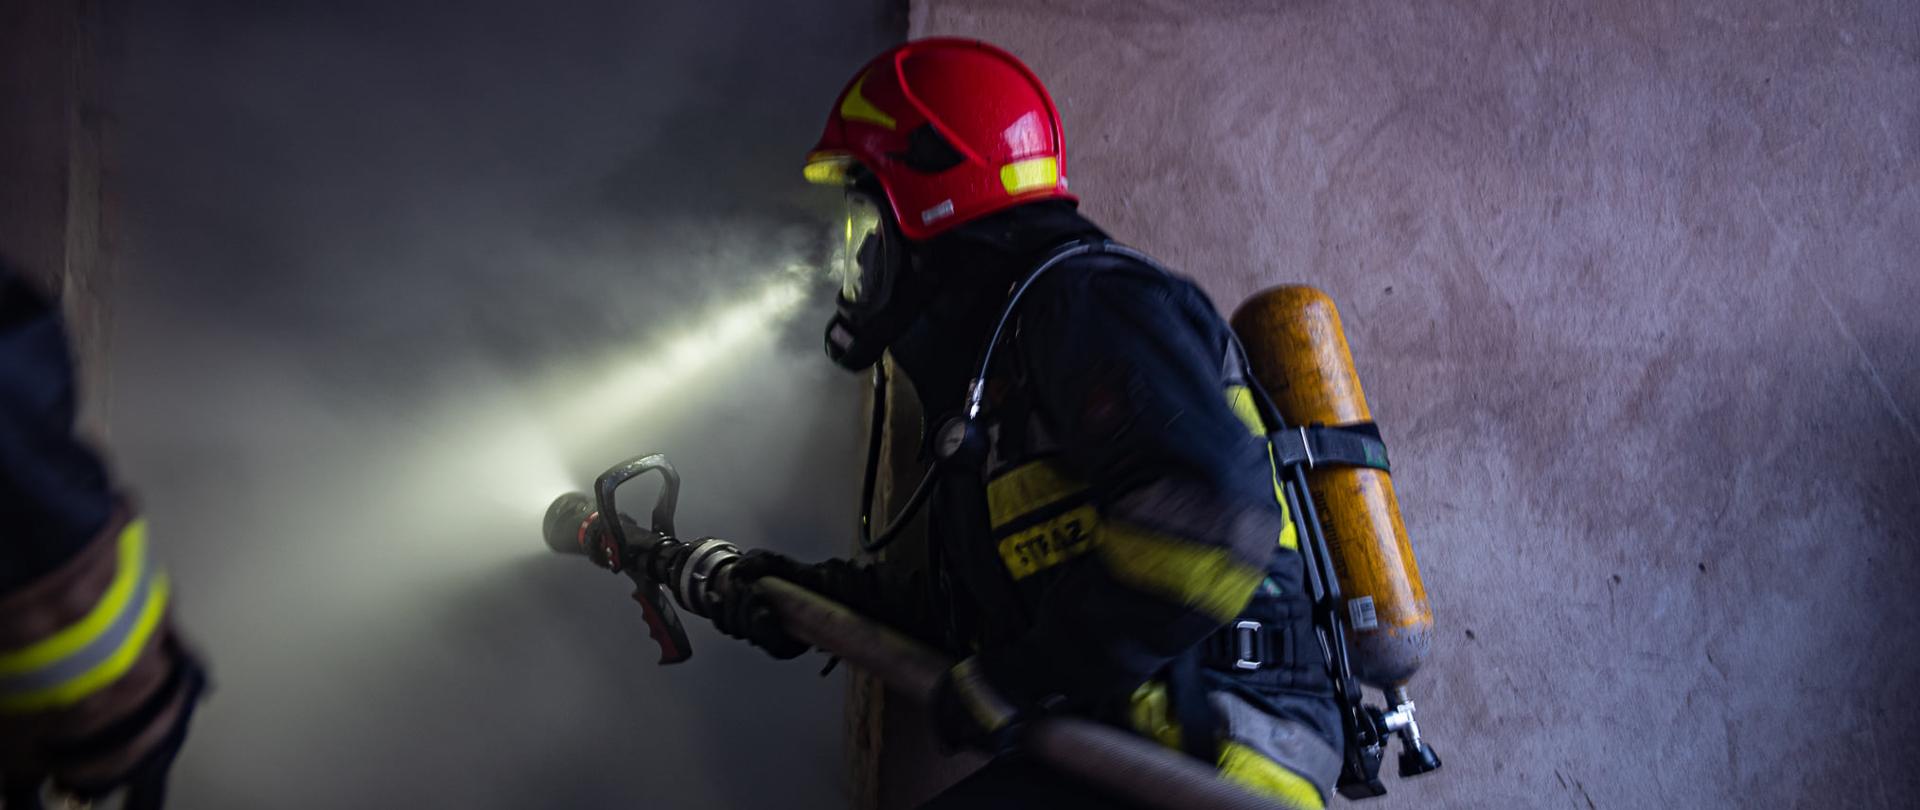 Na zdjęciu widać strażaka podczas akcji gaśniczej